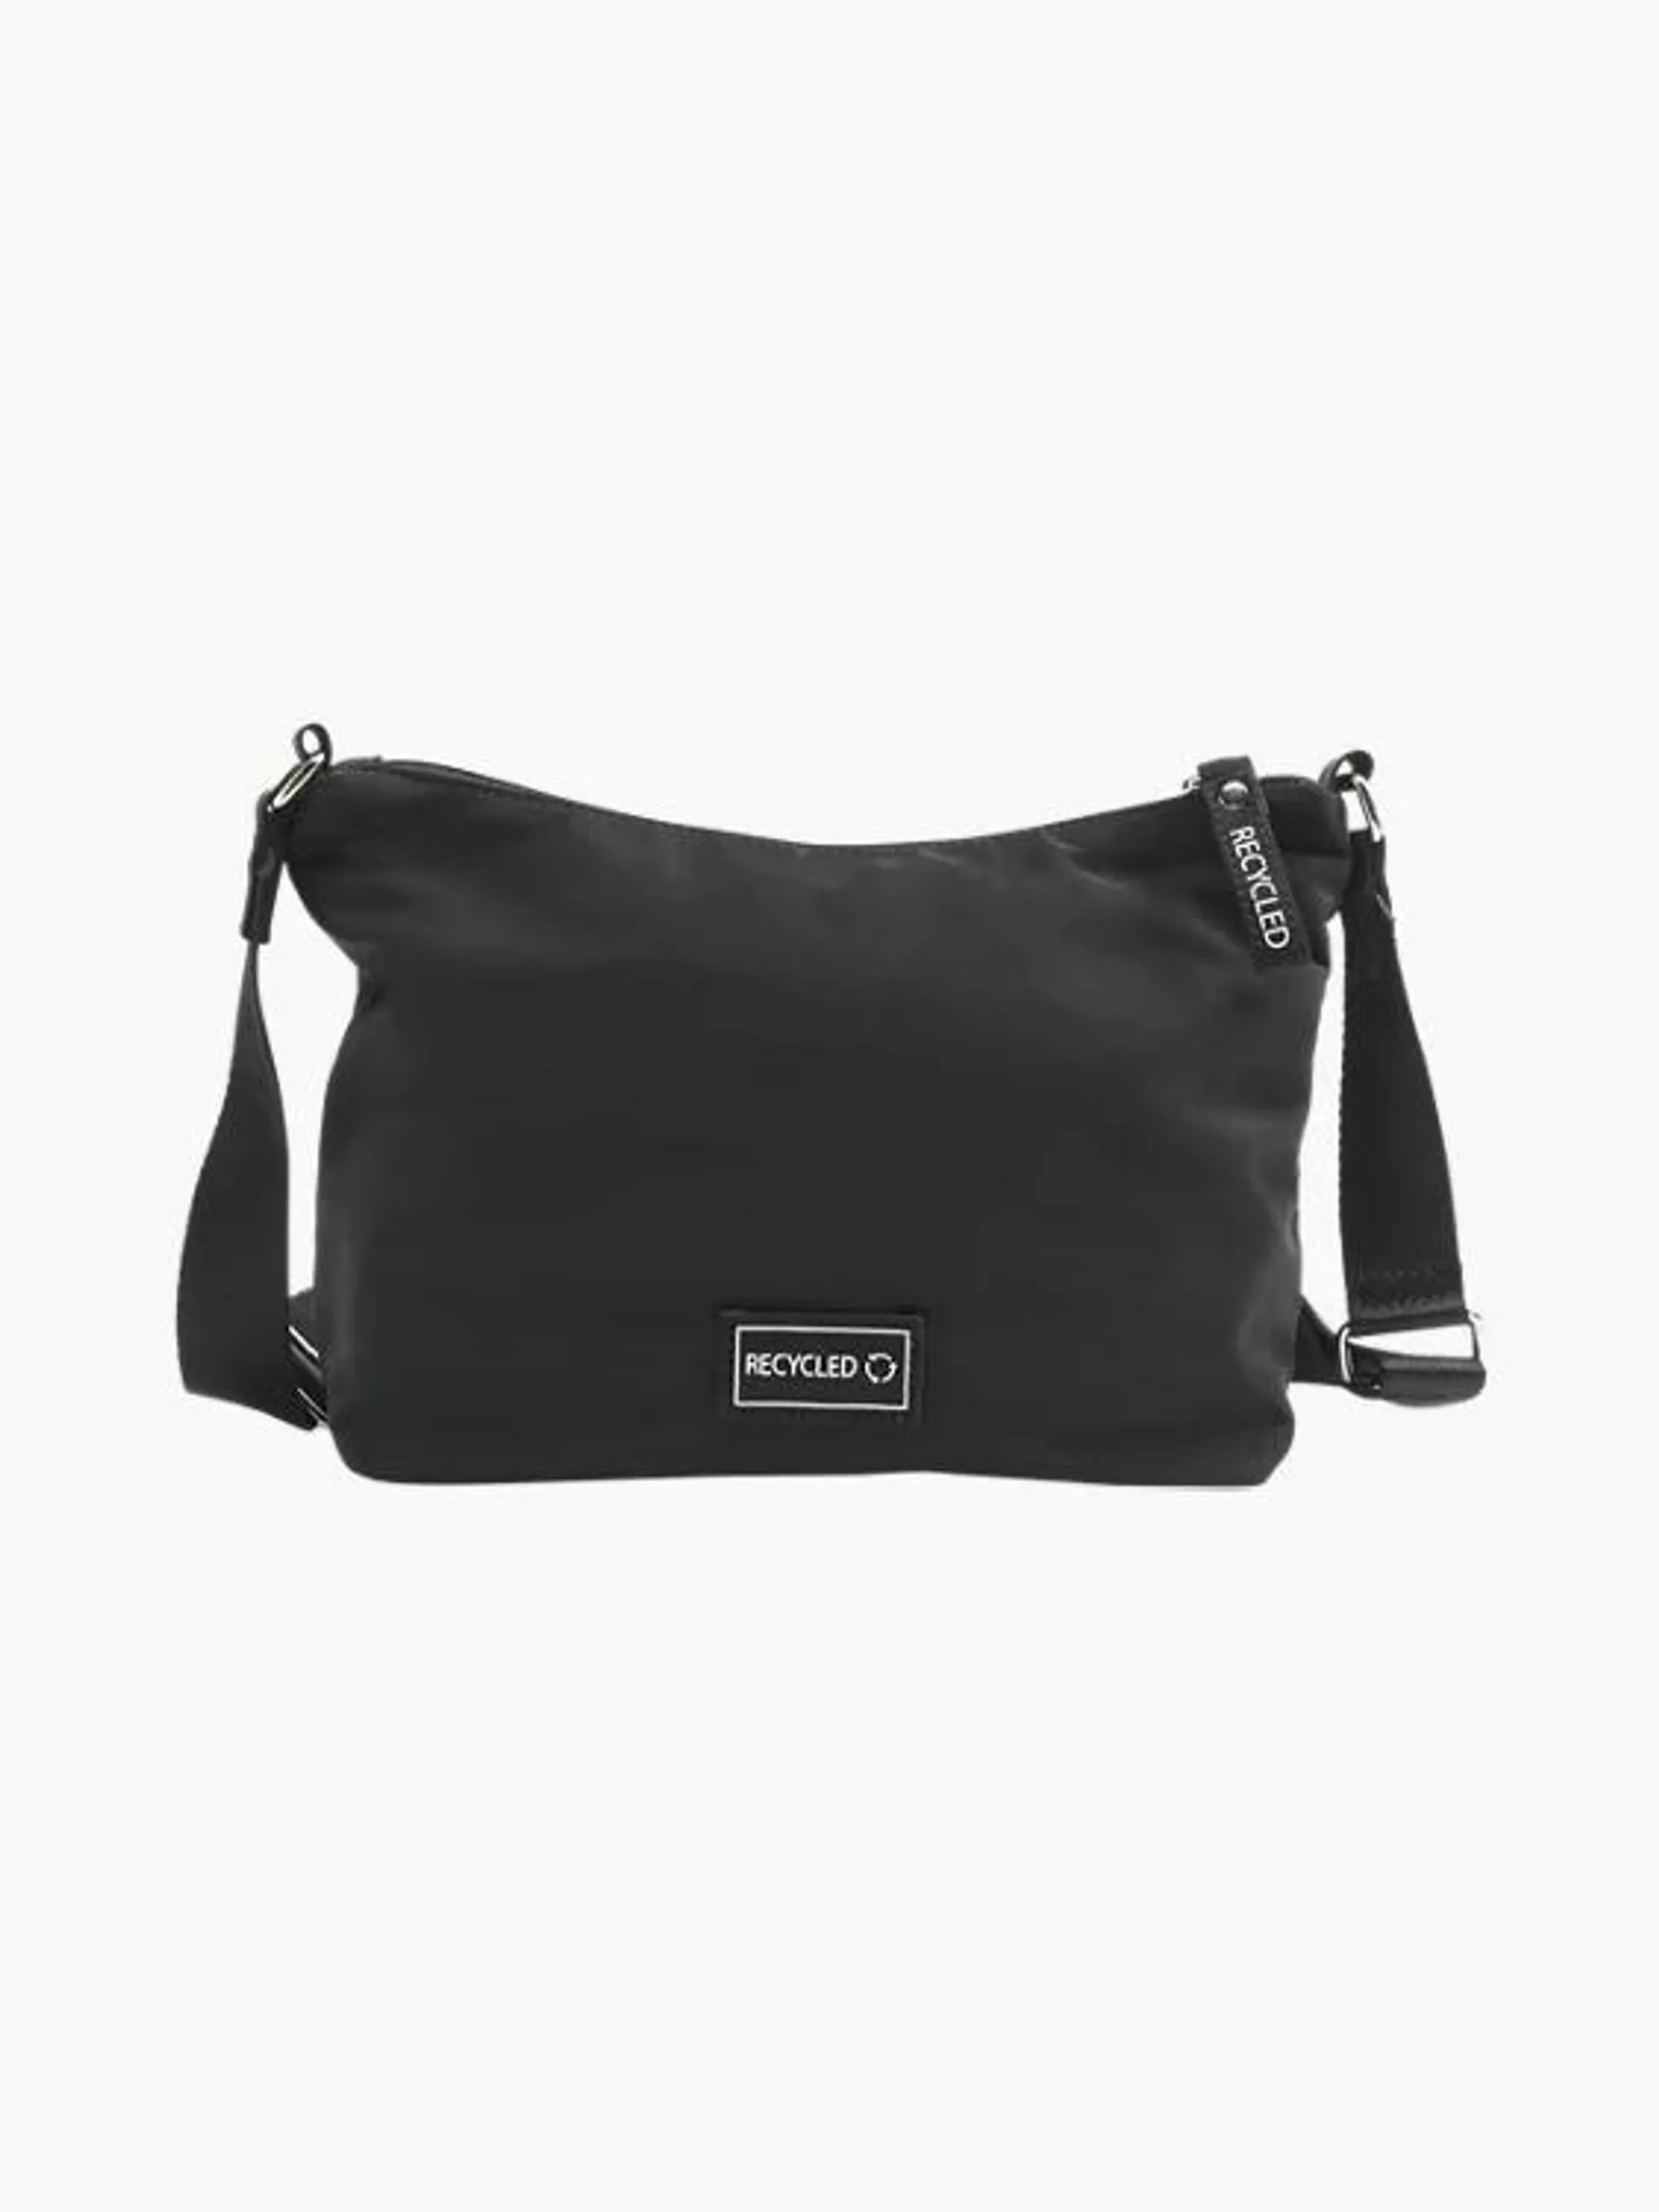 Black Nylon Recycled Shoulder Bag